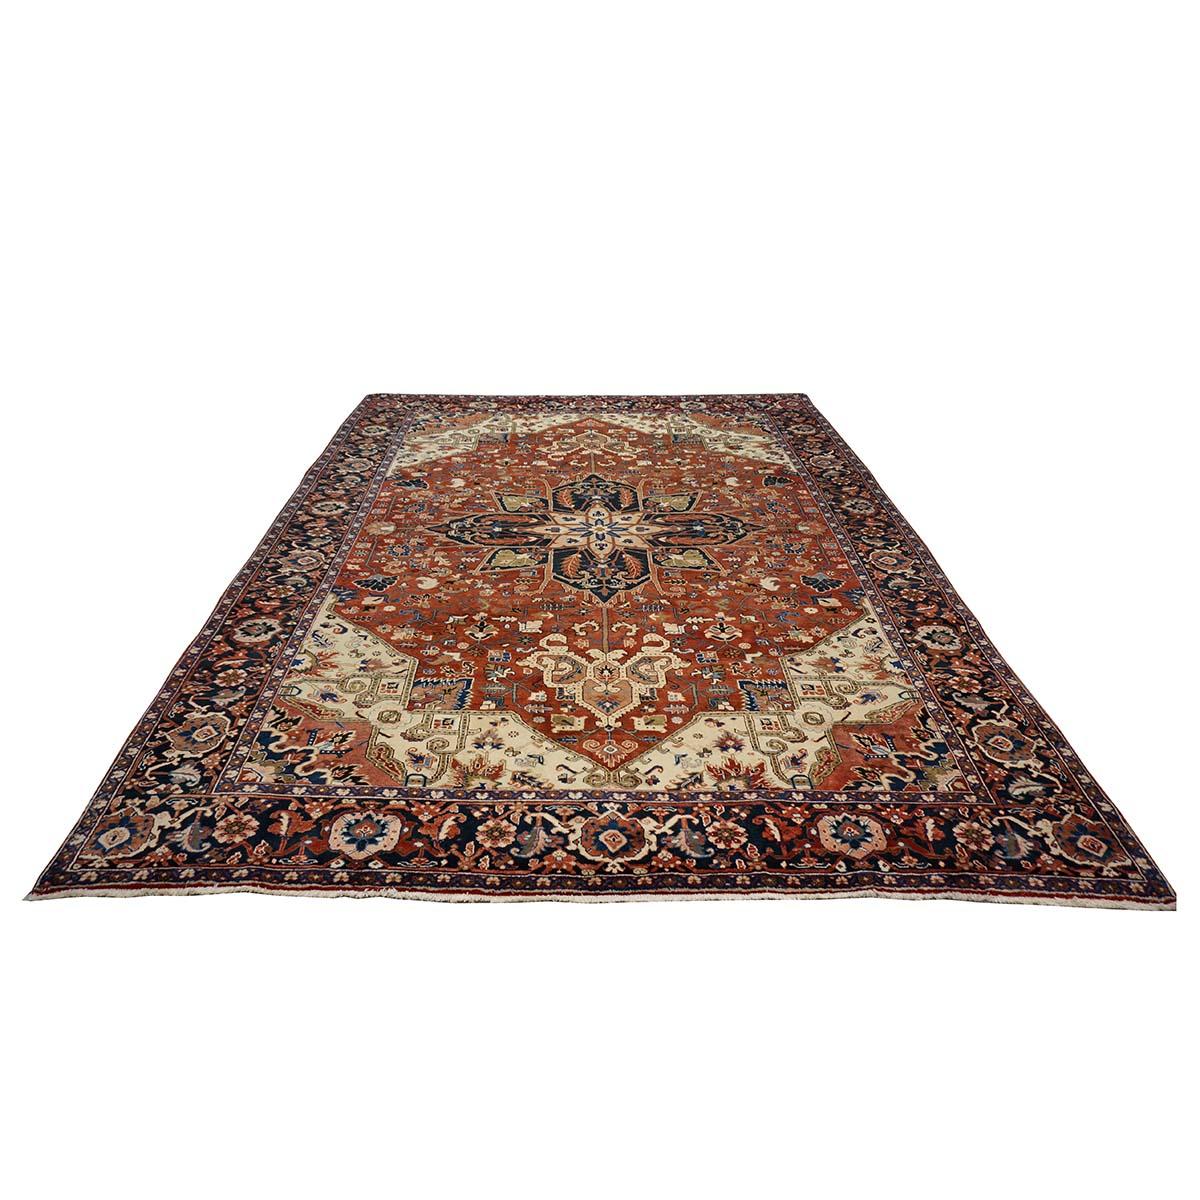 Ashly Fine Rugs präsentiert einen 1950er Vintage Persian Heriz 10x13 Handmade Area Rug. Heriz-Teppiche sind bekannt für ihre kühnen geometrischen Muster und leuchtenden Farben, die oft in Rot-, Blau- und Elfenbeintönen gehalten sind. Diese Teppiche